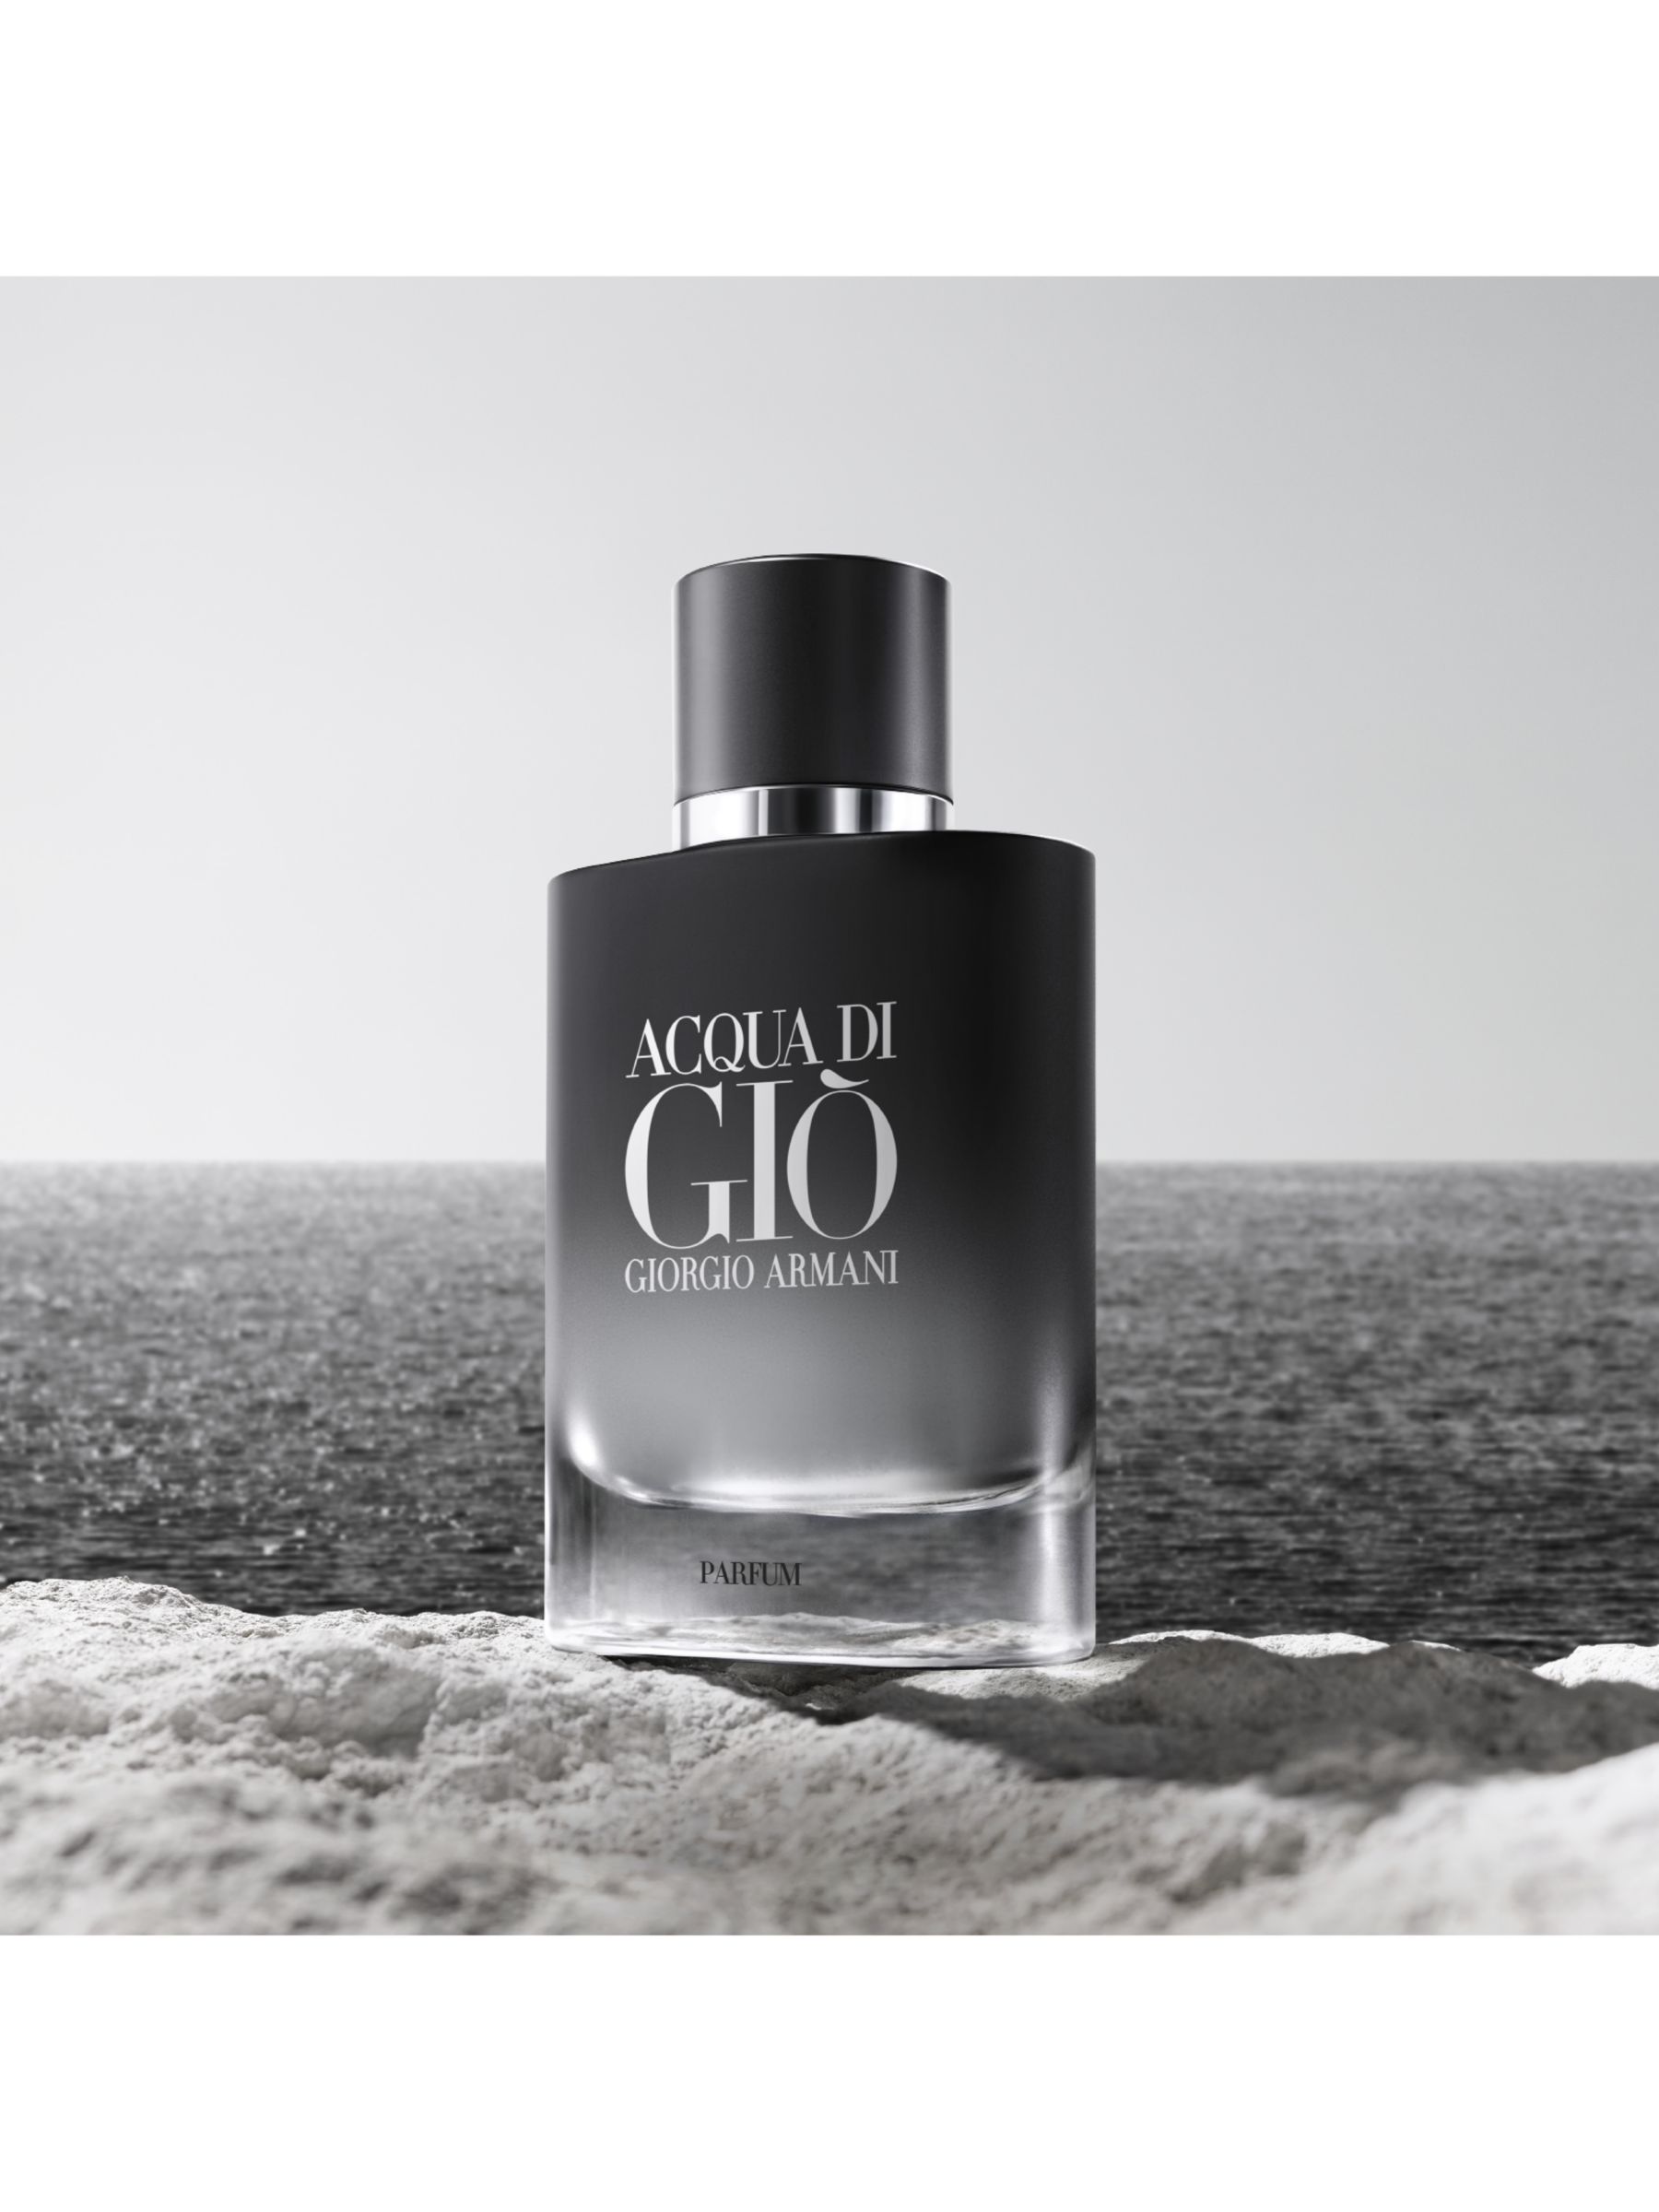 Giorgio Armani Acqua di Giò Homme Parfum Refill, 150ml 7